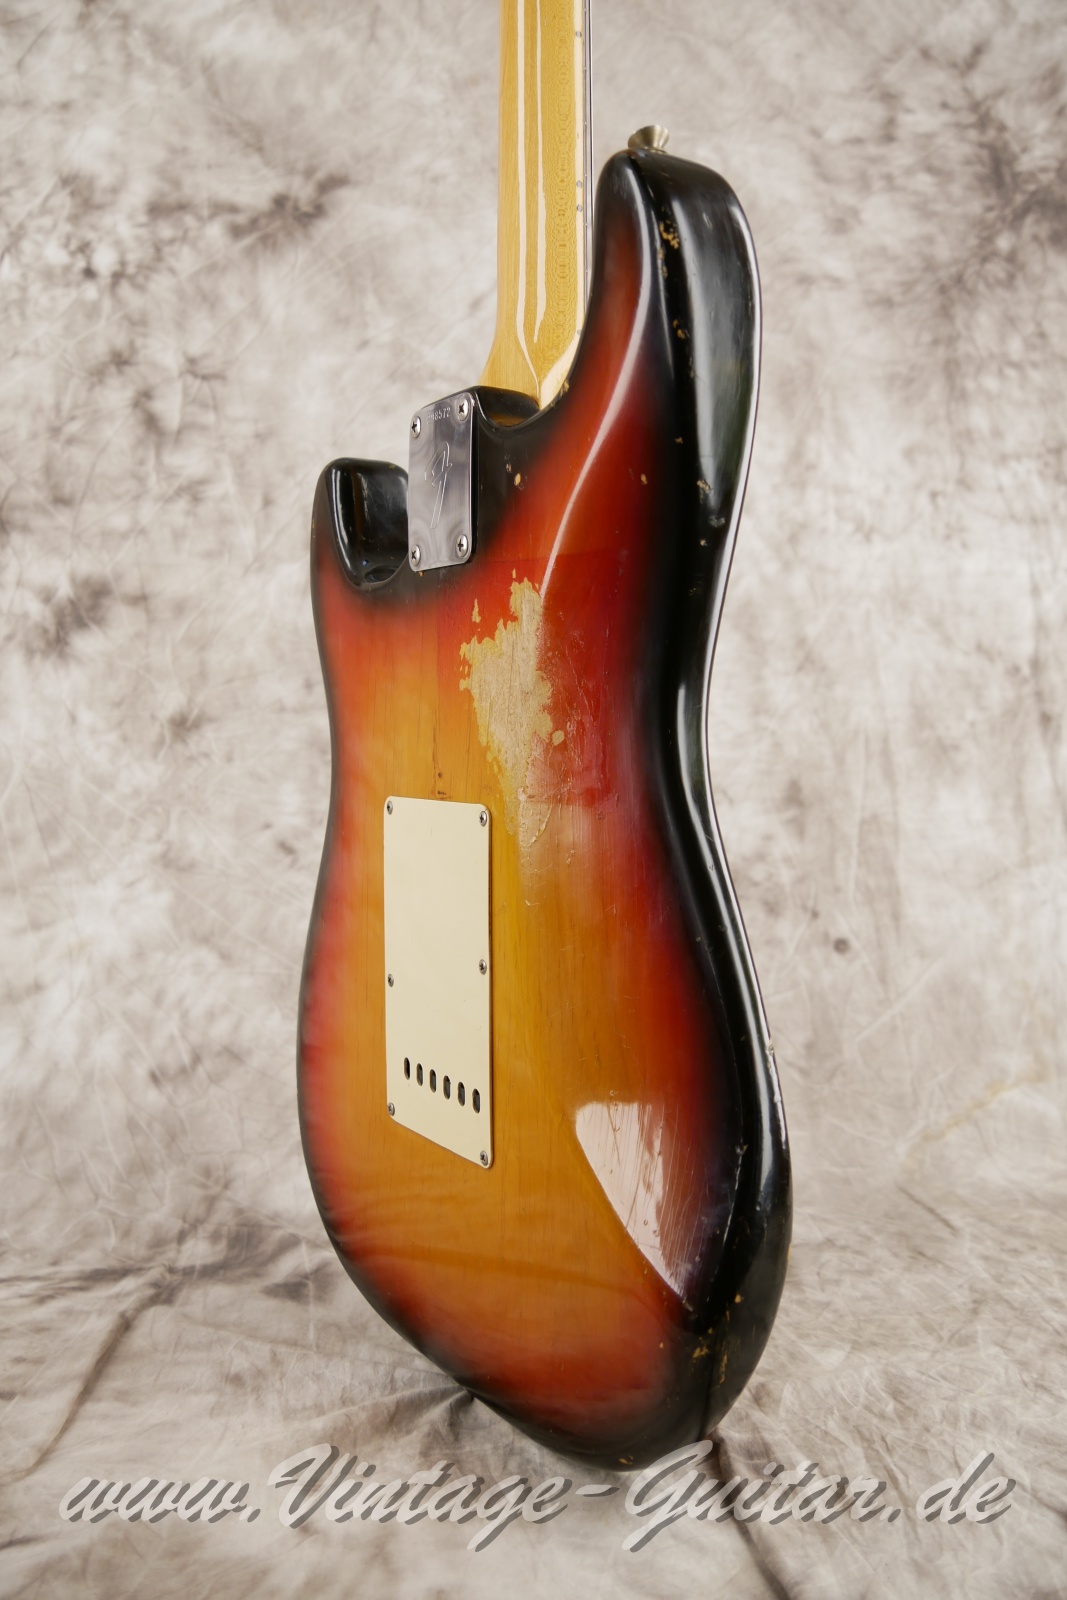 Fender_Stratocaster_sunburst_4hole_1971-012.JPG